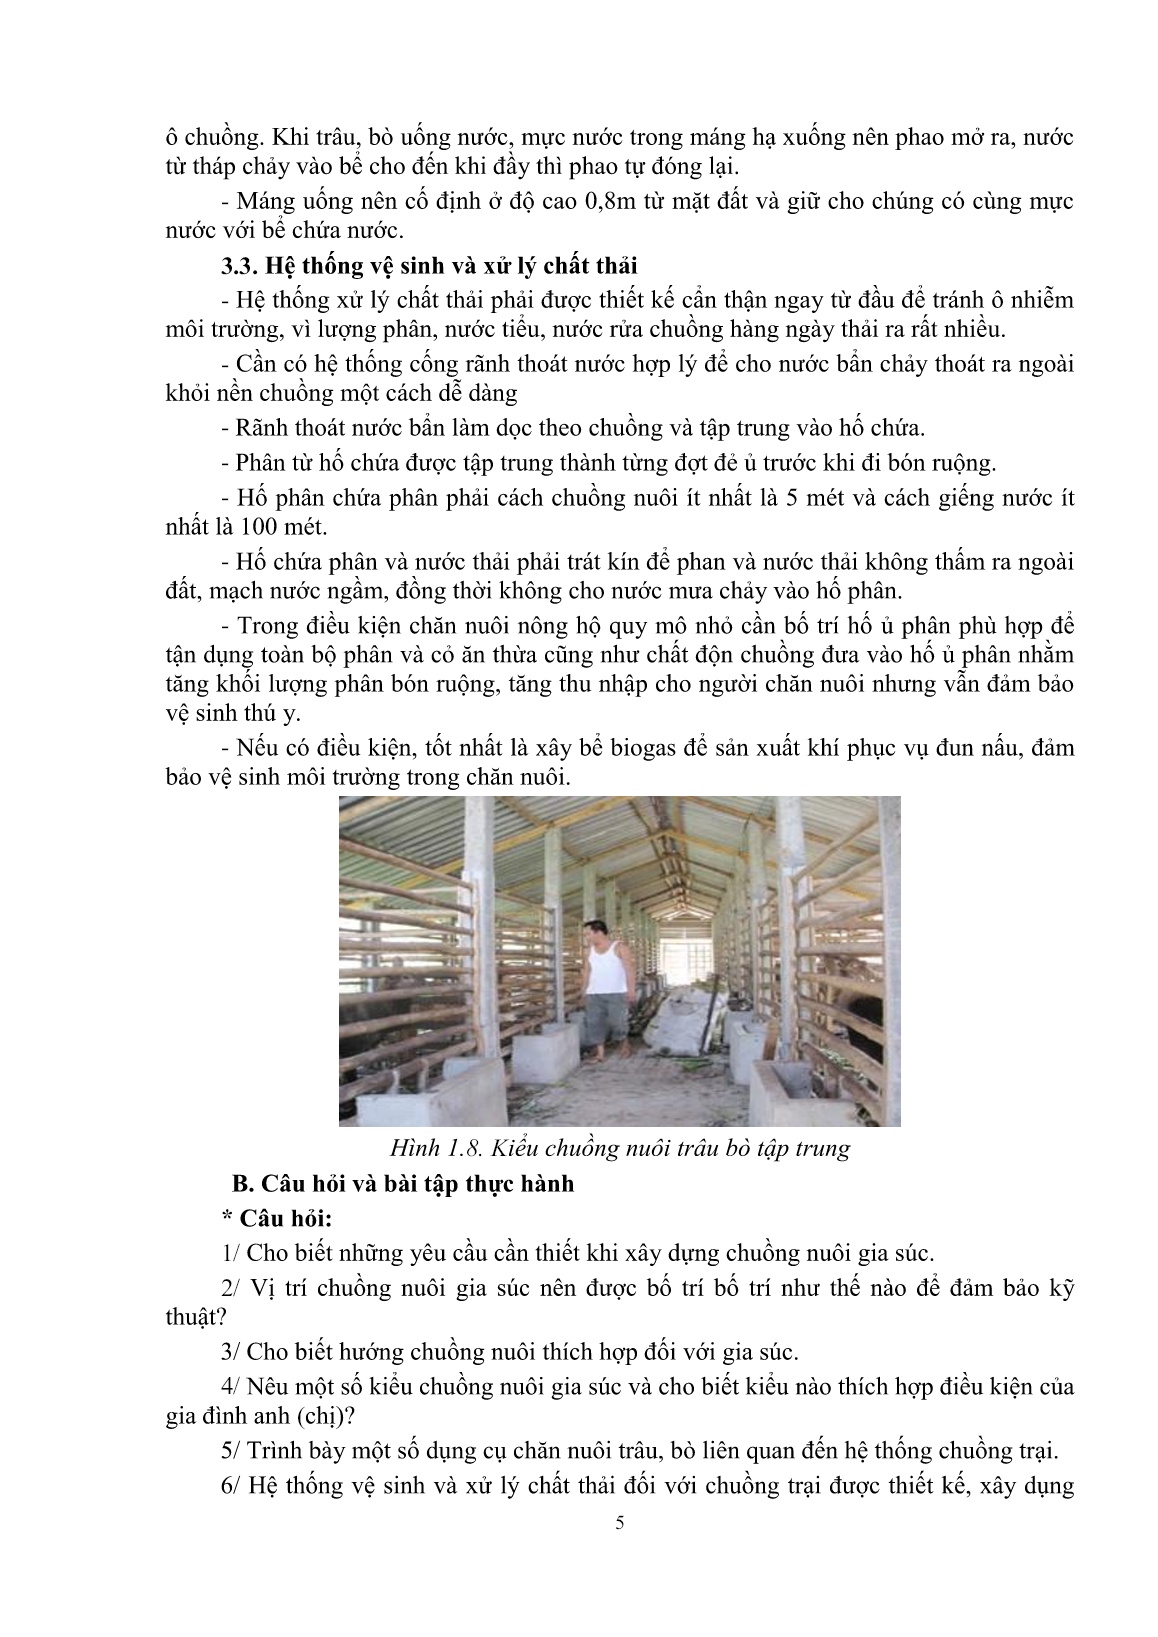 Giáo trình mô đun Nuôi trâu, bò thịt (Trình độ: Đào tạo dưới 3 tháng) trang 7